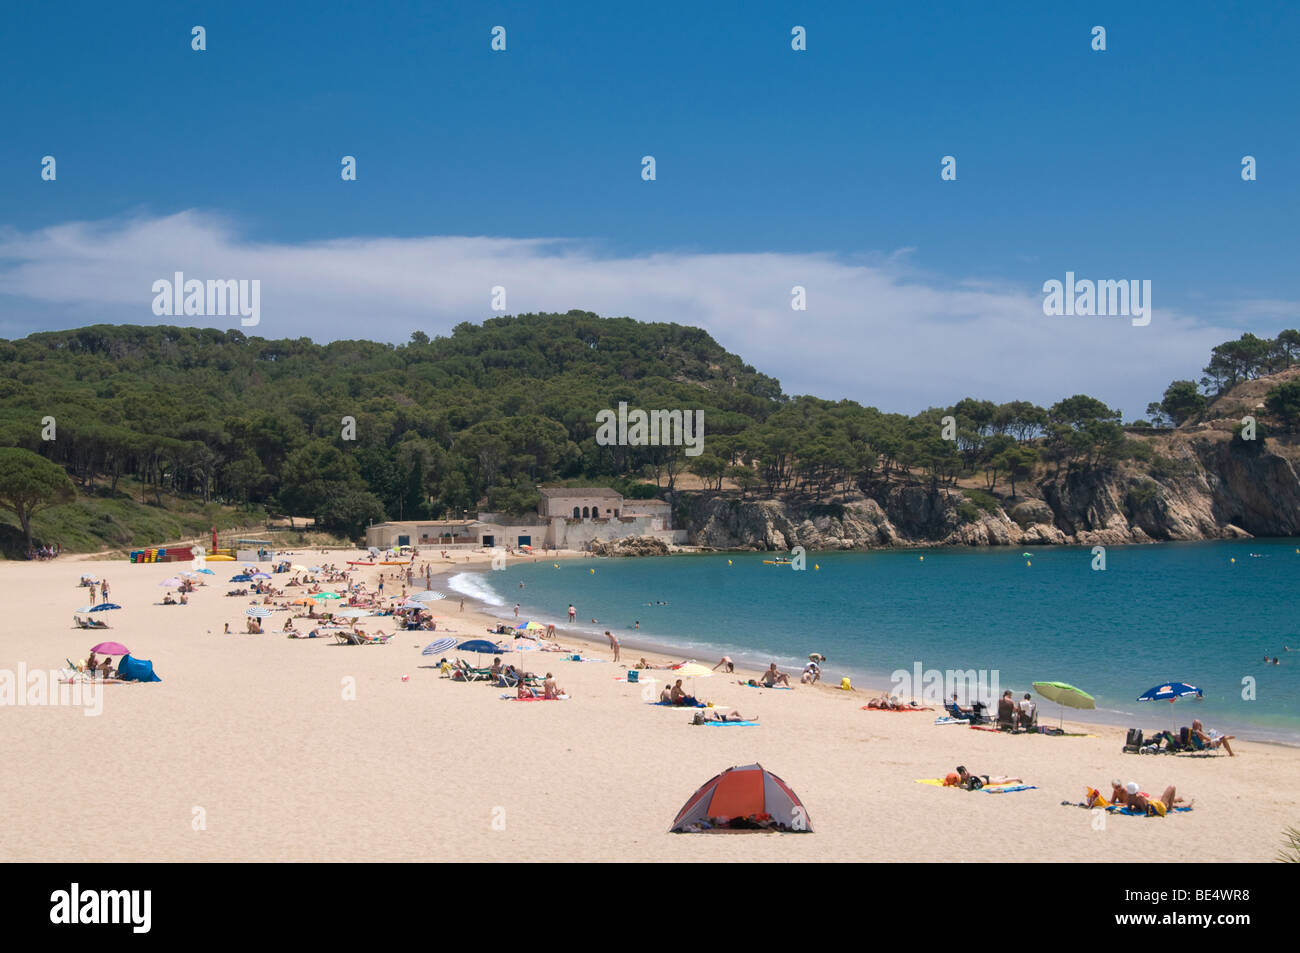 Palamos beach, Girona, Spain Stock Photo - Alamy